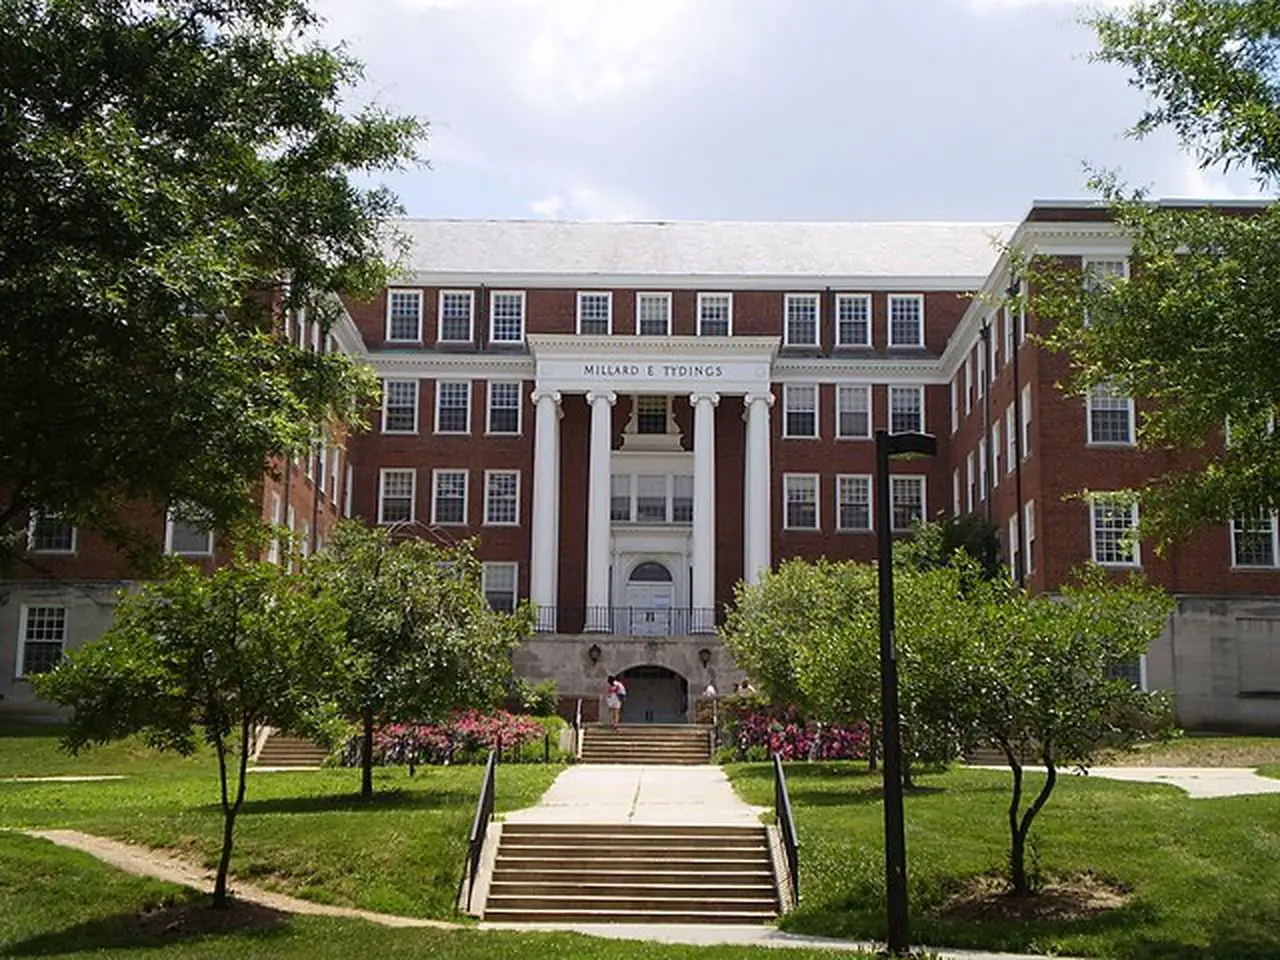 University of Maryland (UMD)